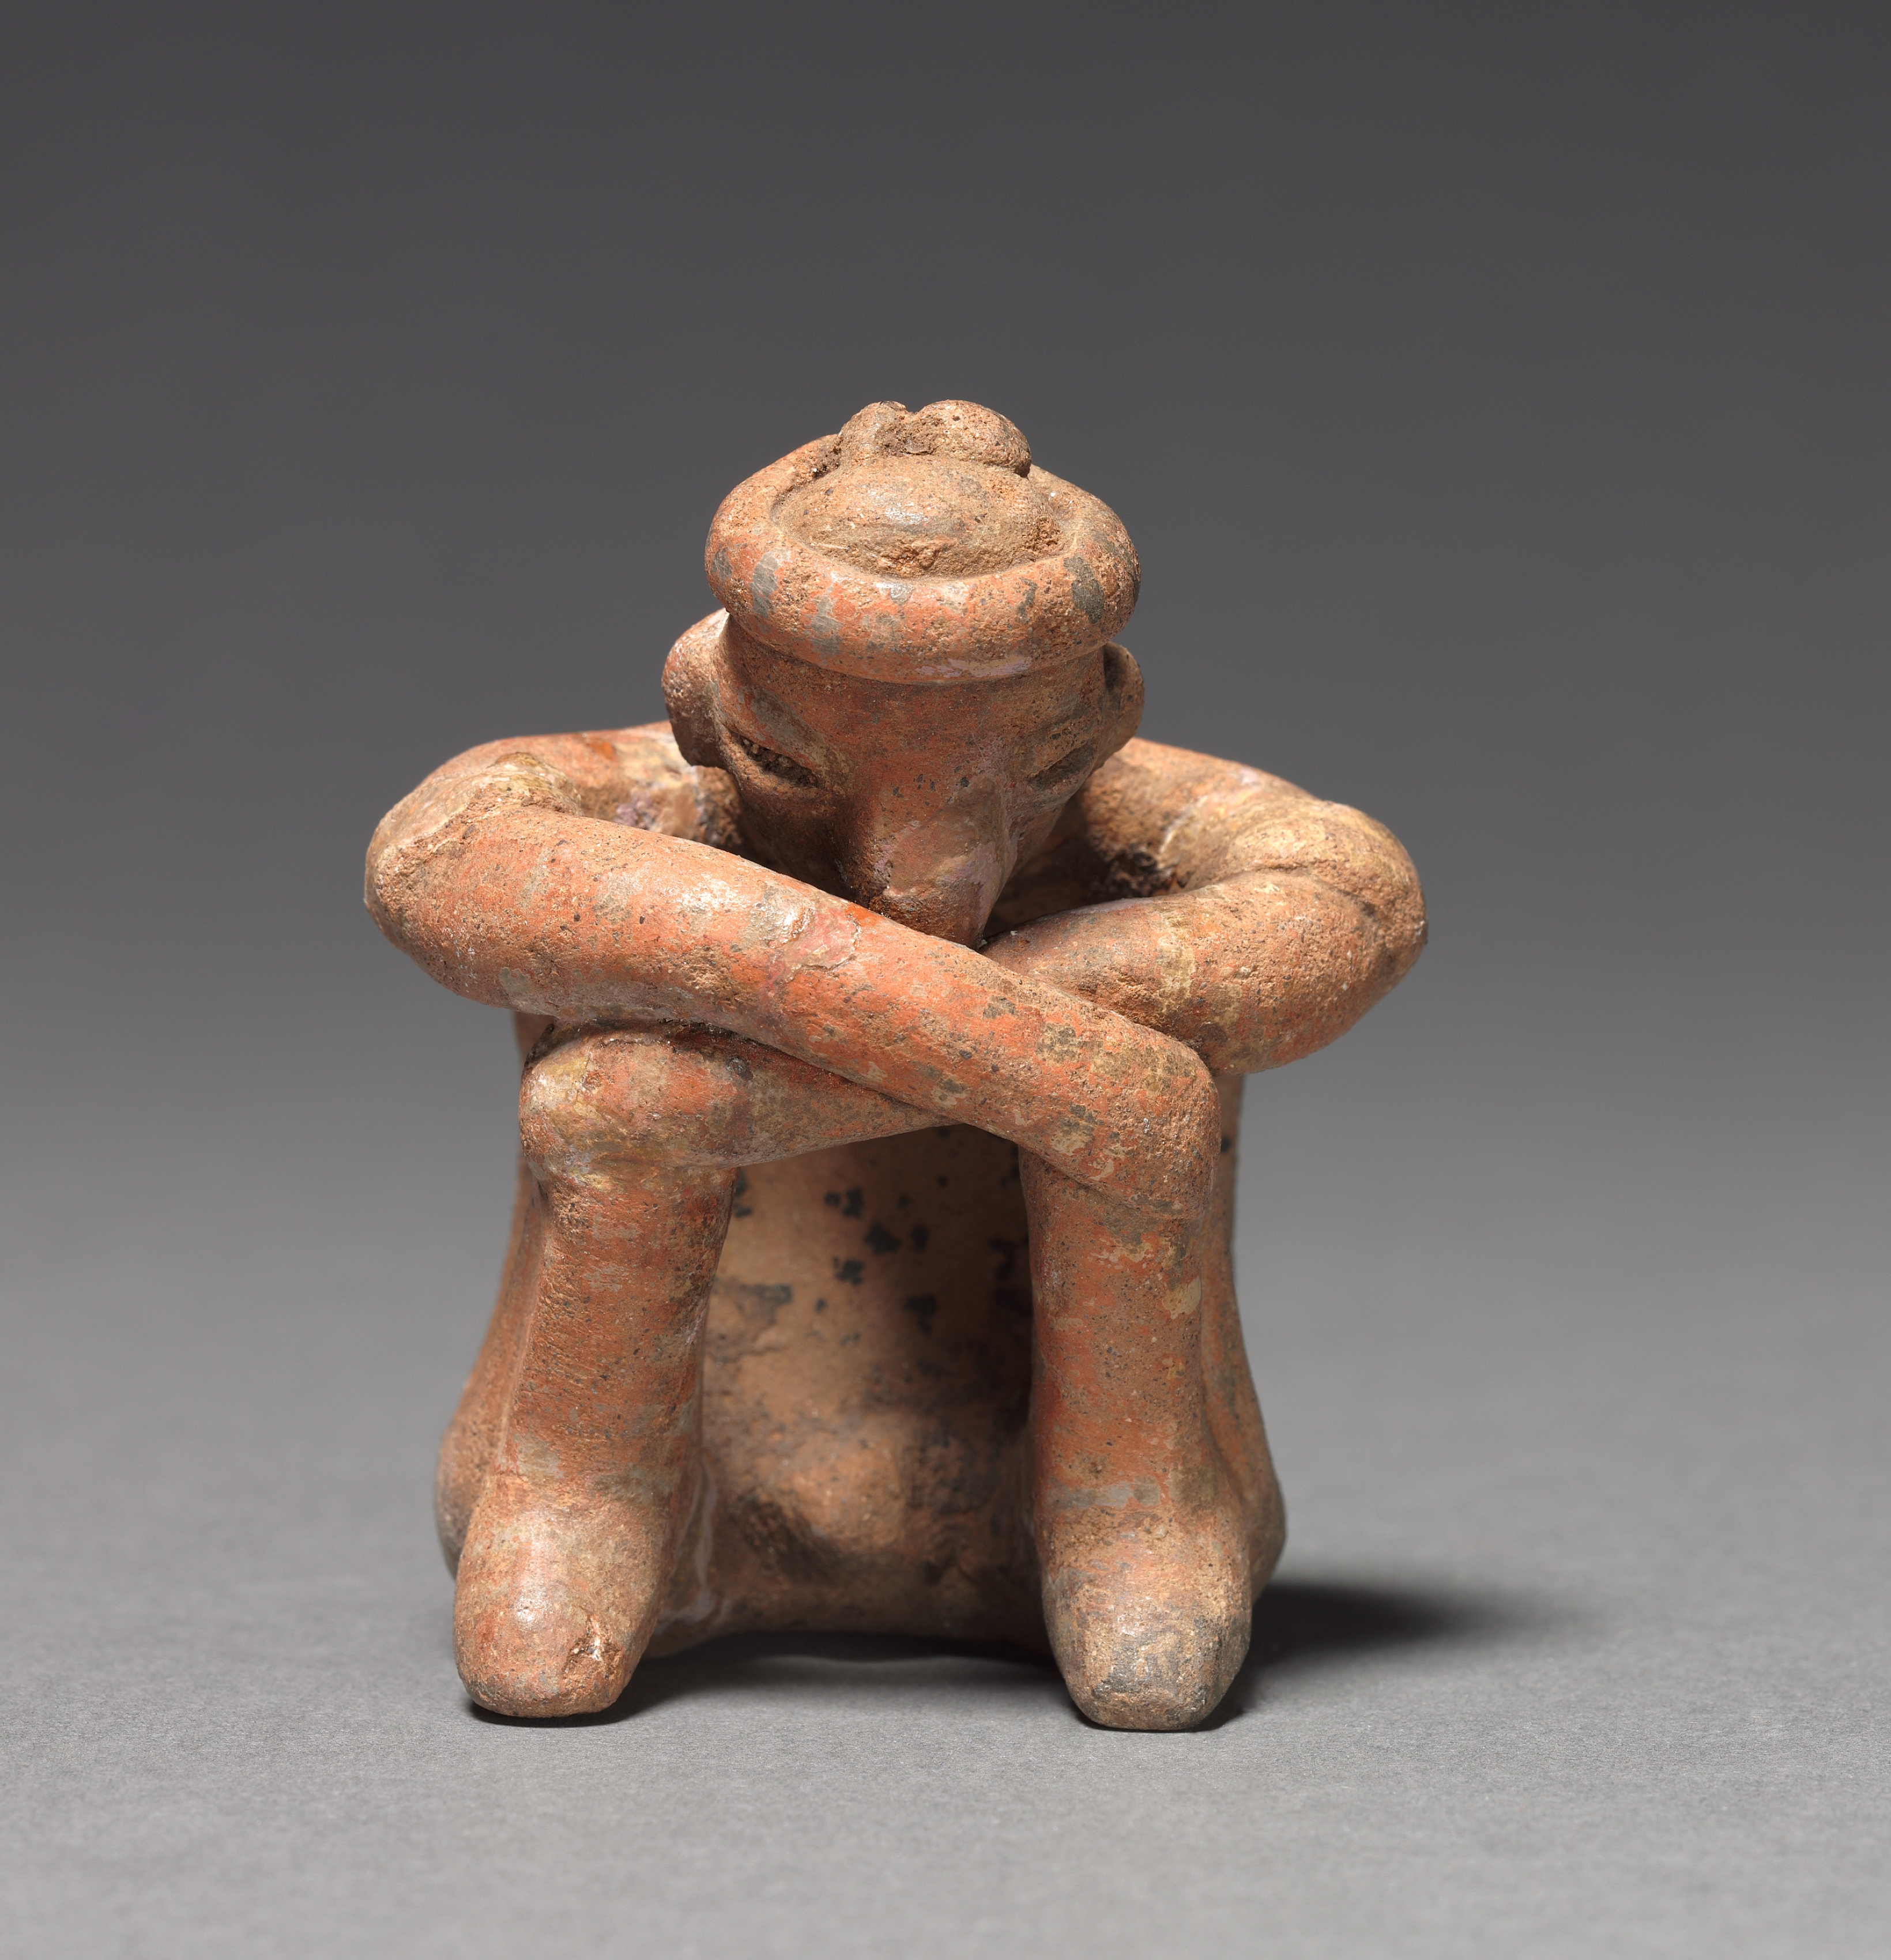 Seated Male Figurine